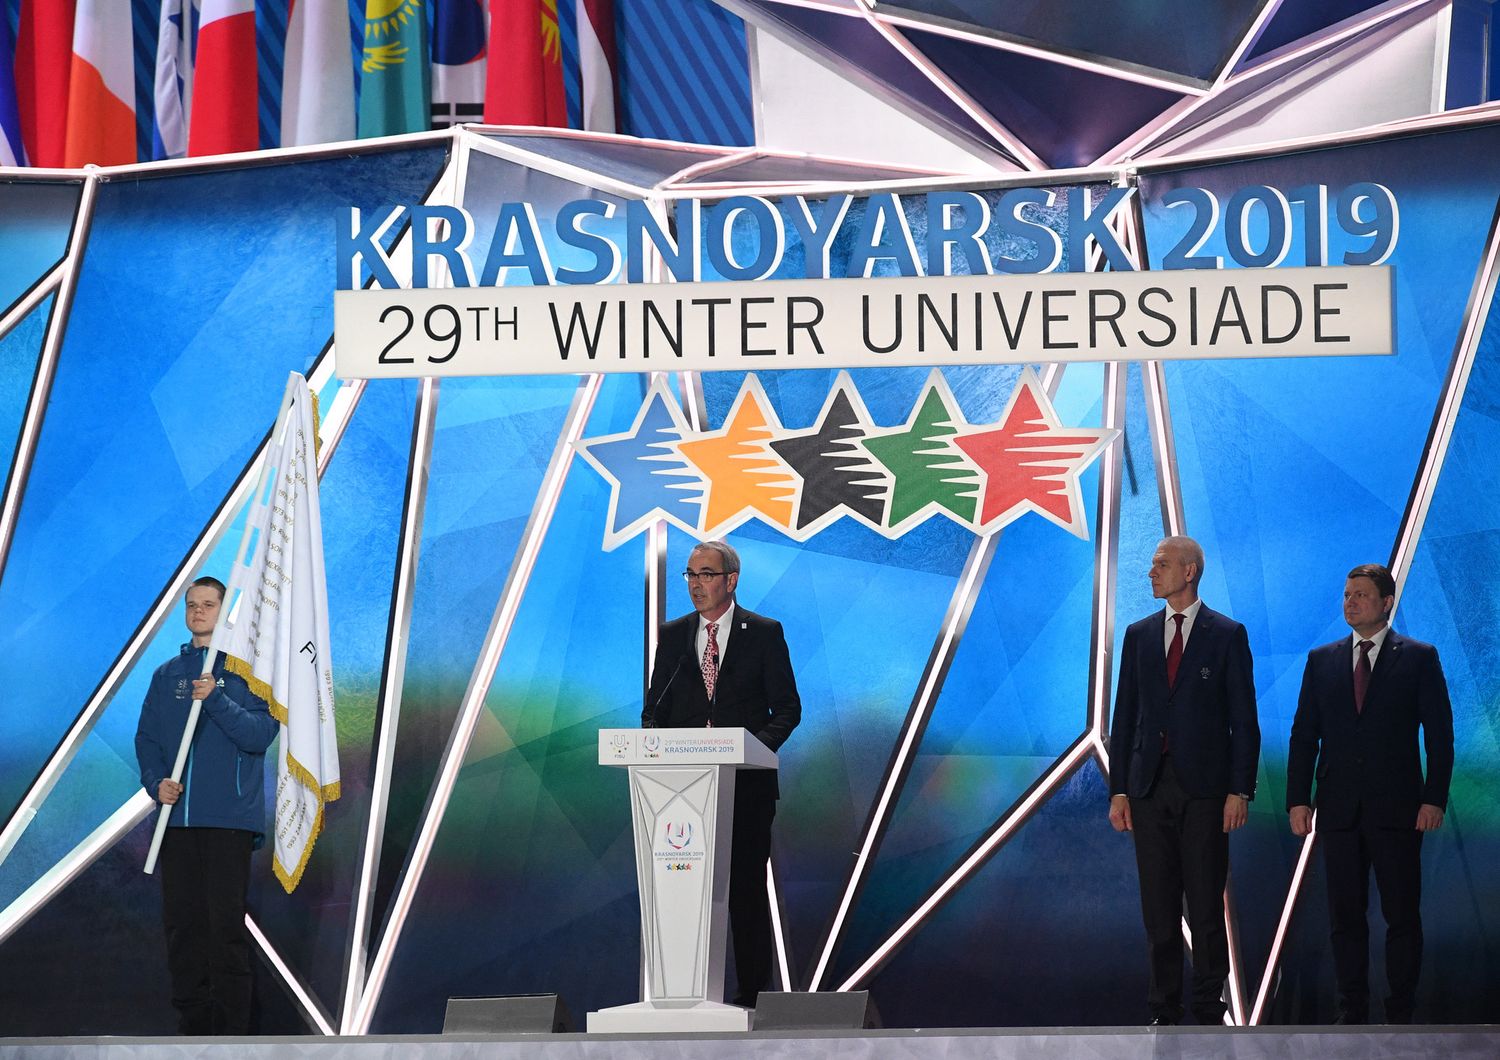 Il sindaco di Lucerna a&nbsp;Krasnojarsk per ricevere il 'testimone' dall'Universiade precedente